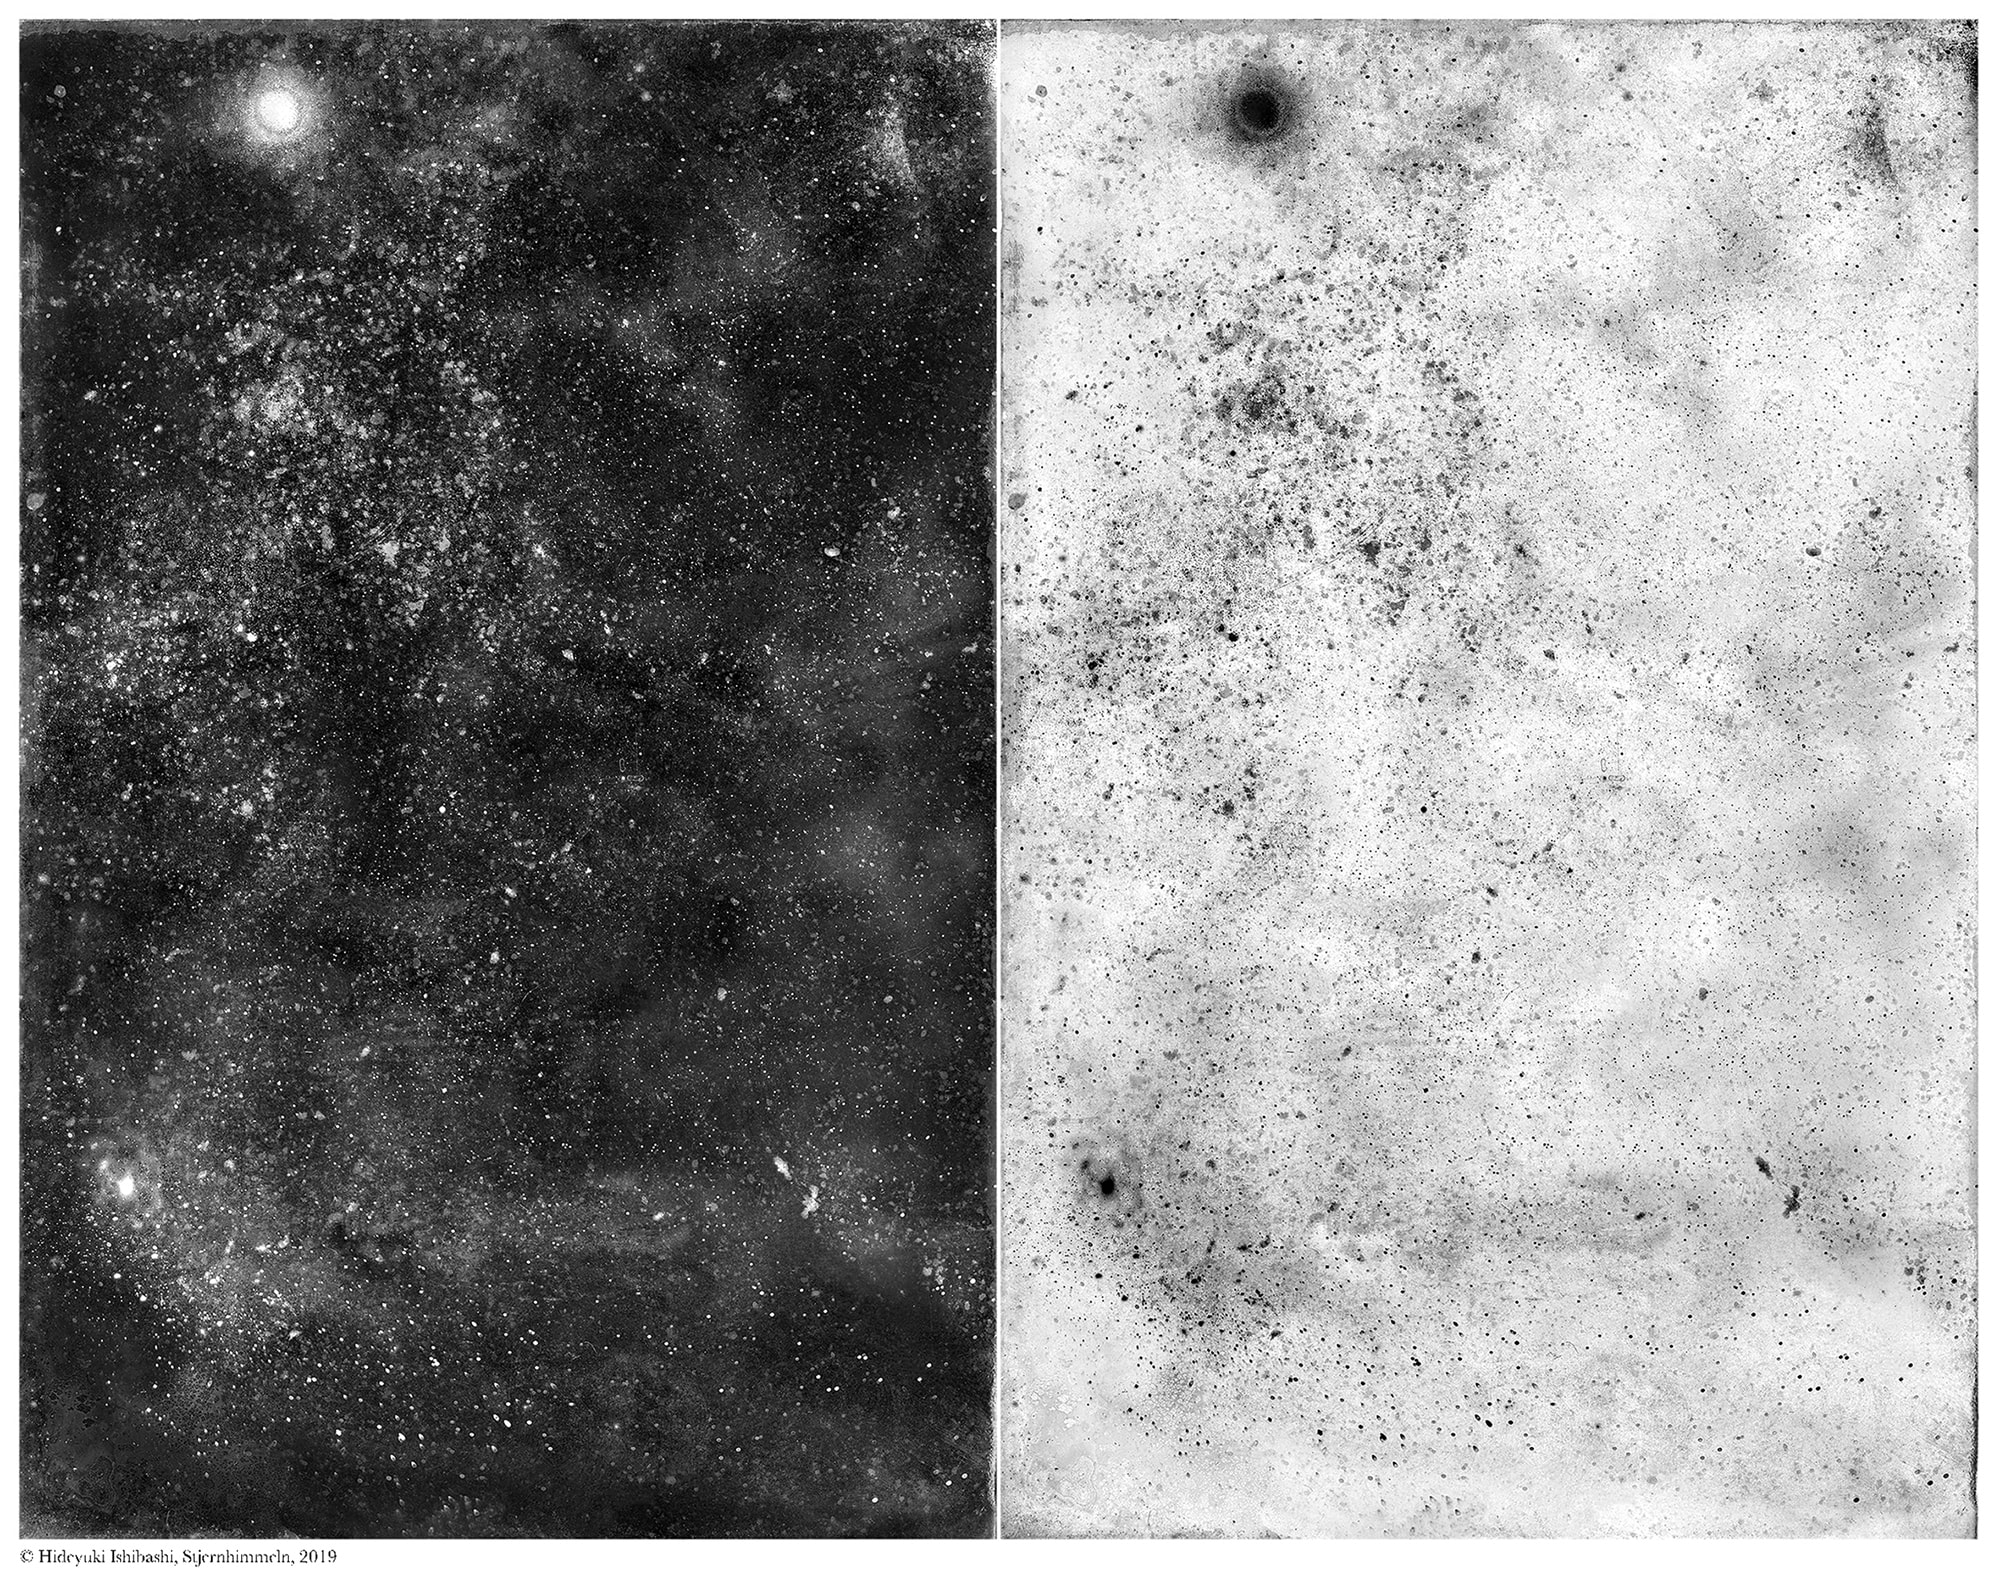 石橋英之「古典技法とテクノロジーを駆使するコンセプチュアルアーティスト」 | Poussières d'étoiles #01, Stjernhimmeln, glass wet plate collodion with led light, variable dimension, 2019